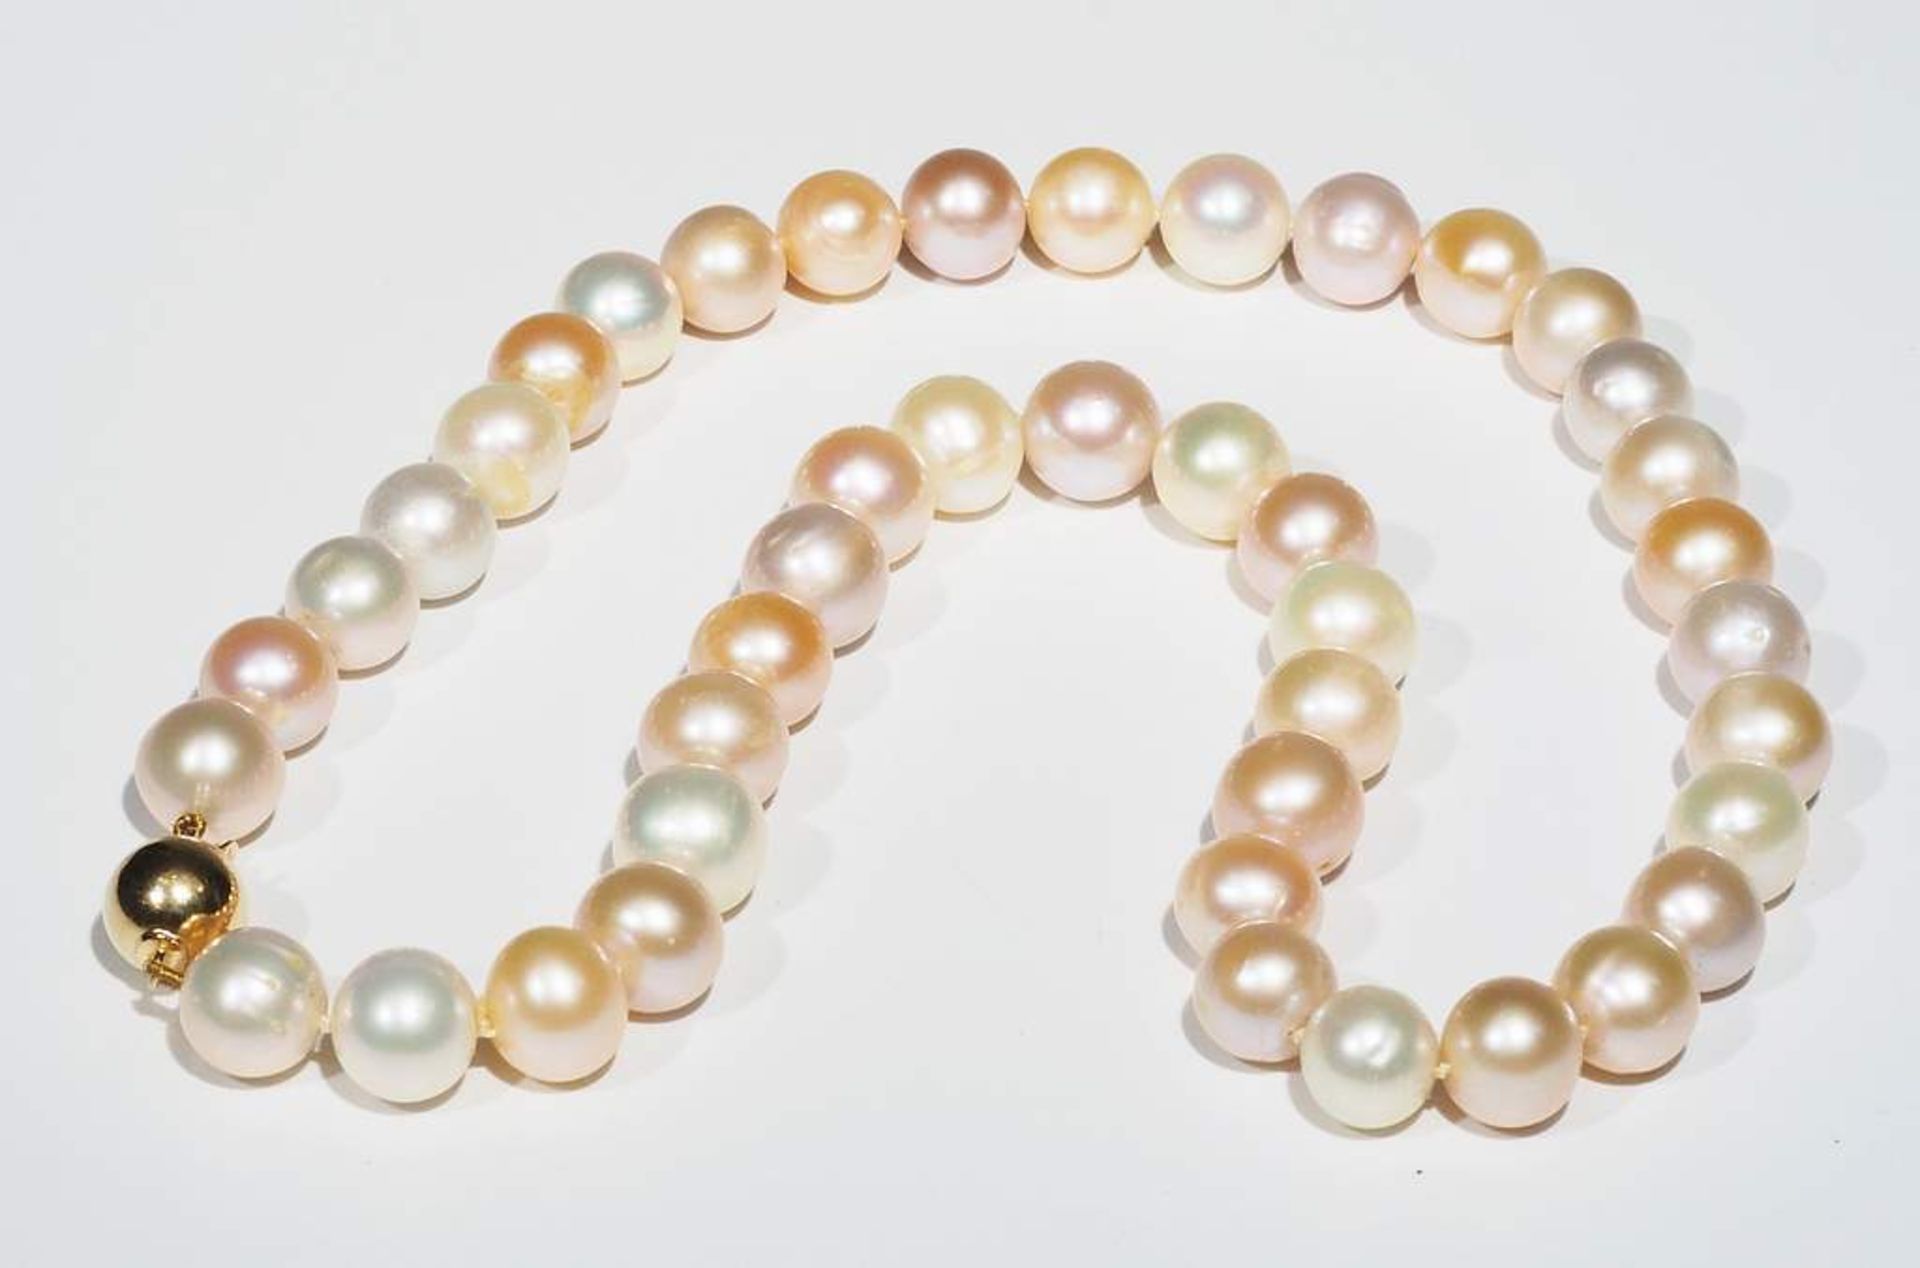 Multicolor Perlenkette in Pastelltönen mit 585er Gelbgoldverschluß. - Bild 5 aus 7